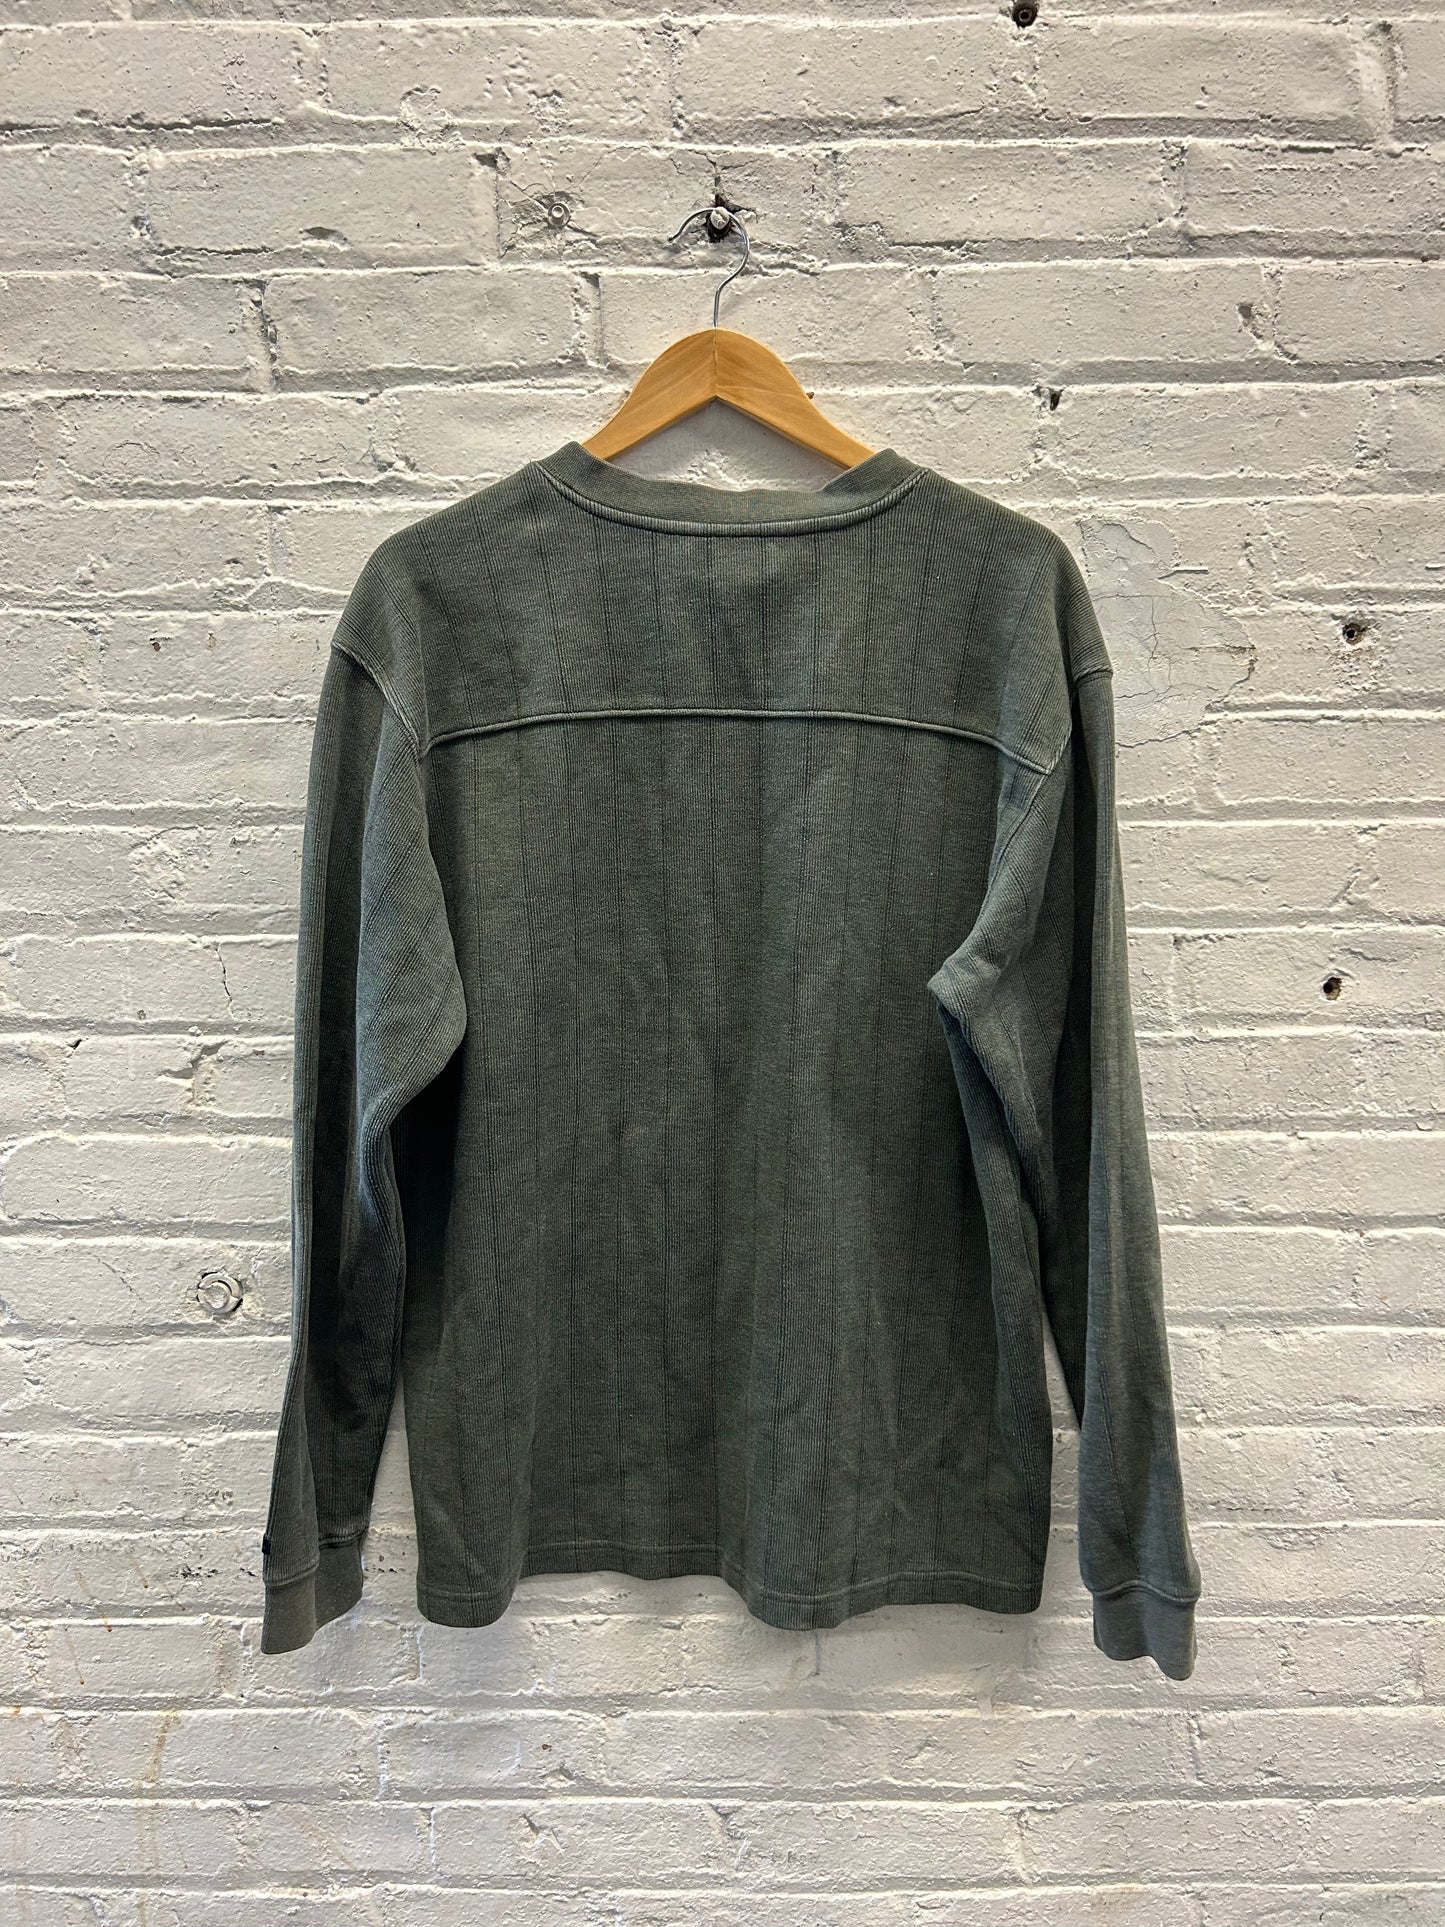 Columbia Sweater - XL